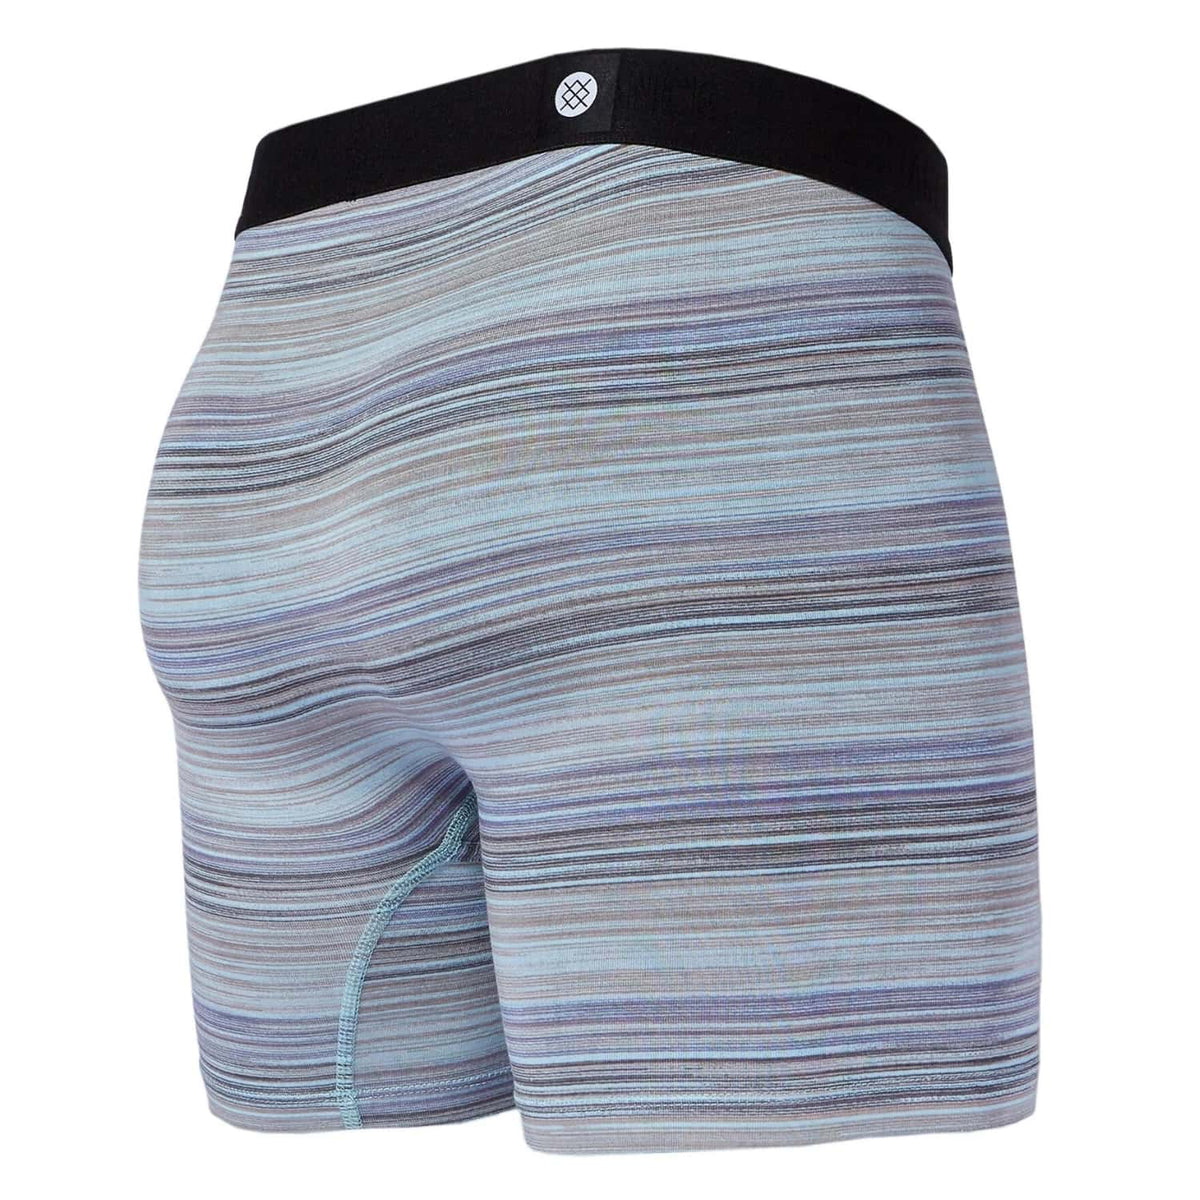 Stance Dakota Boxer Brief - Blue - Mens Boxer Briefs Underwear by Stance